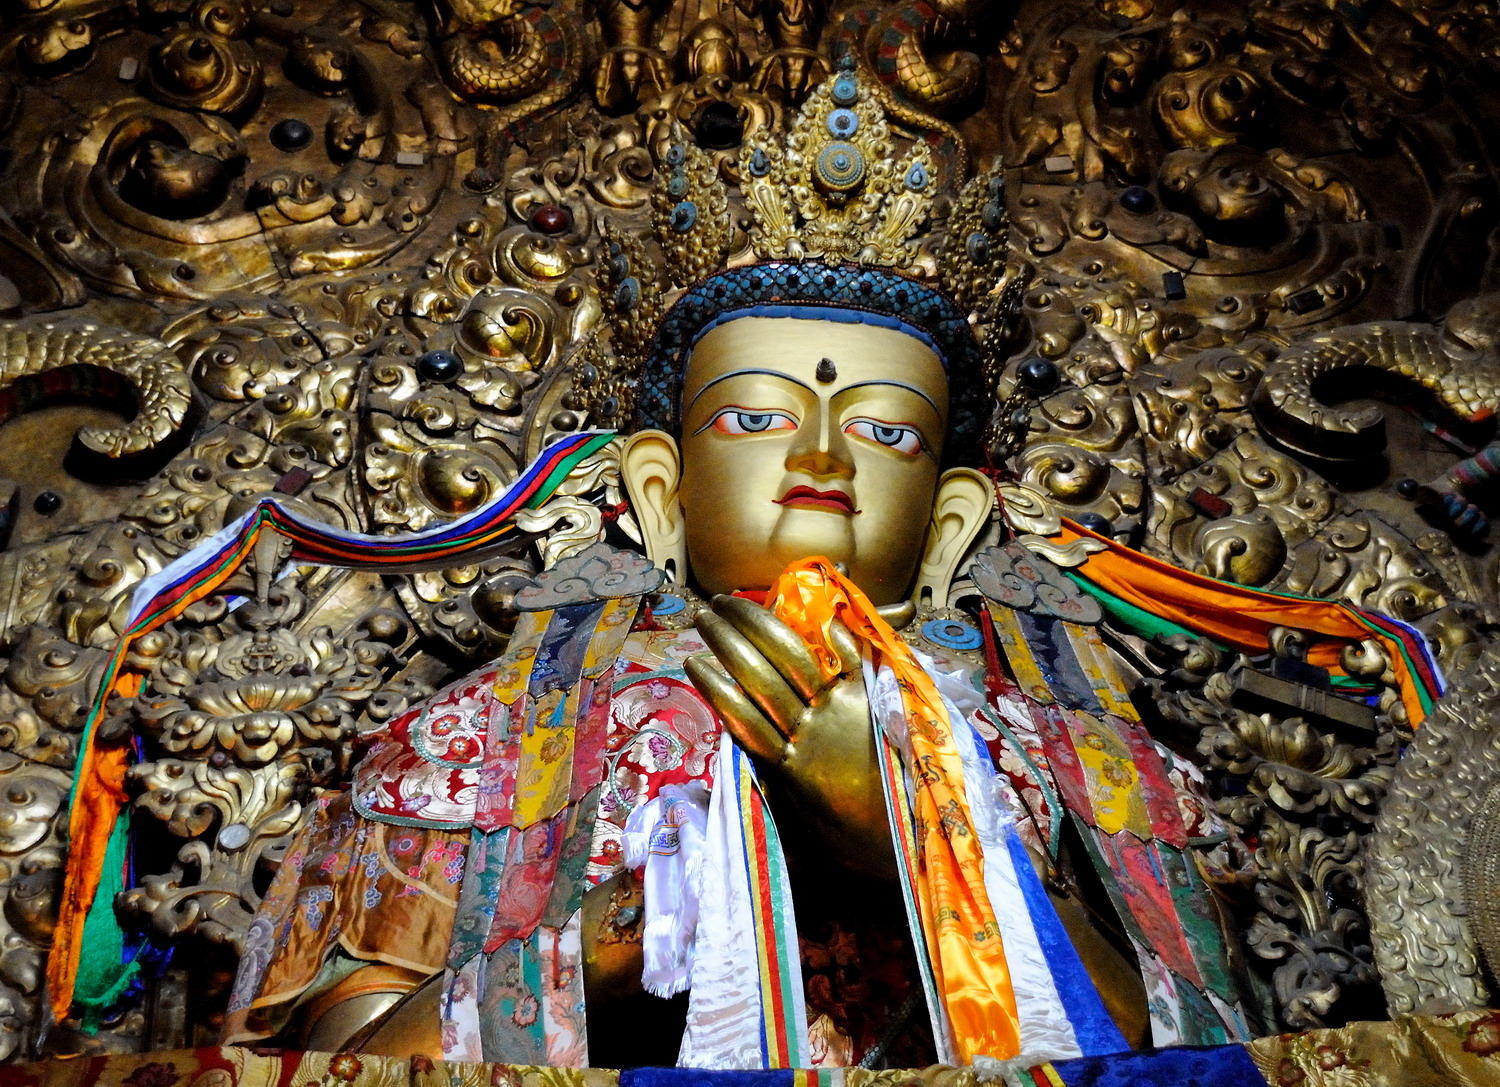 DSC_0064_1A1 - Drepung Monastery